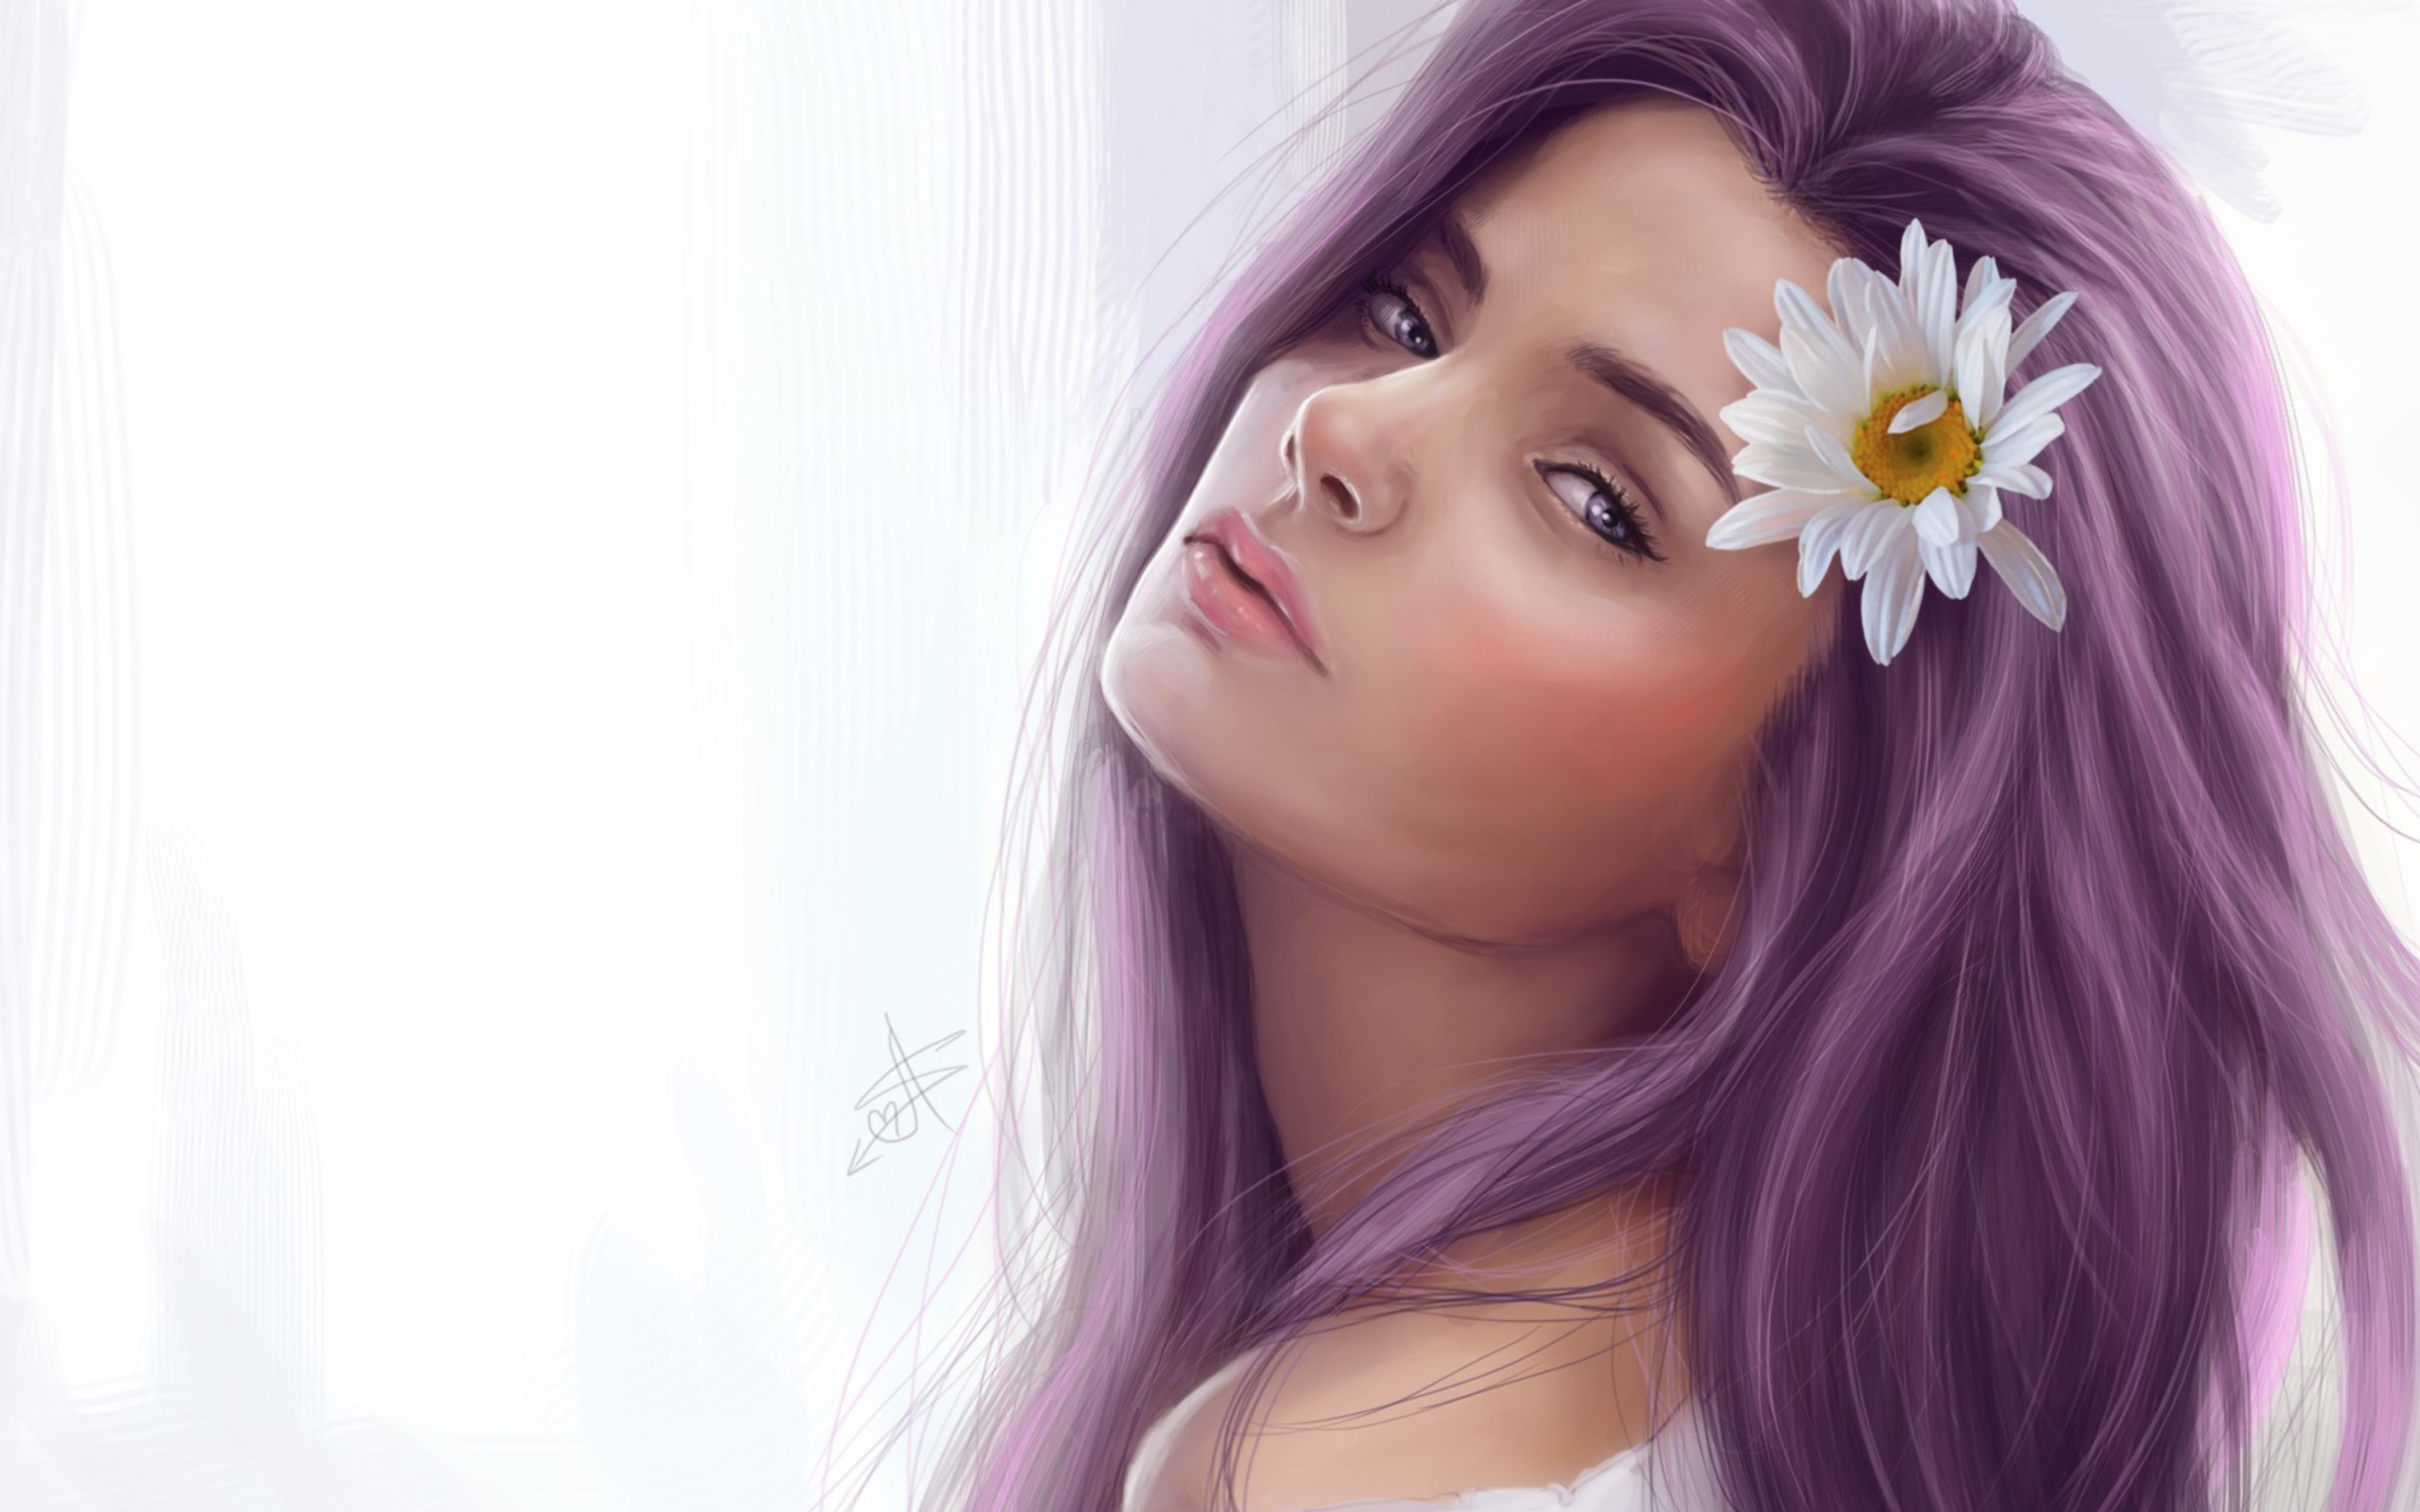 Обои Girl With Purple Hair Painting 2560x1600